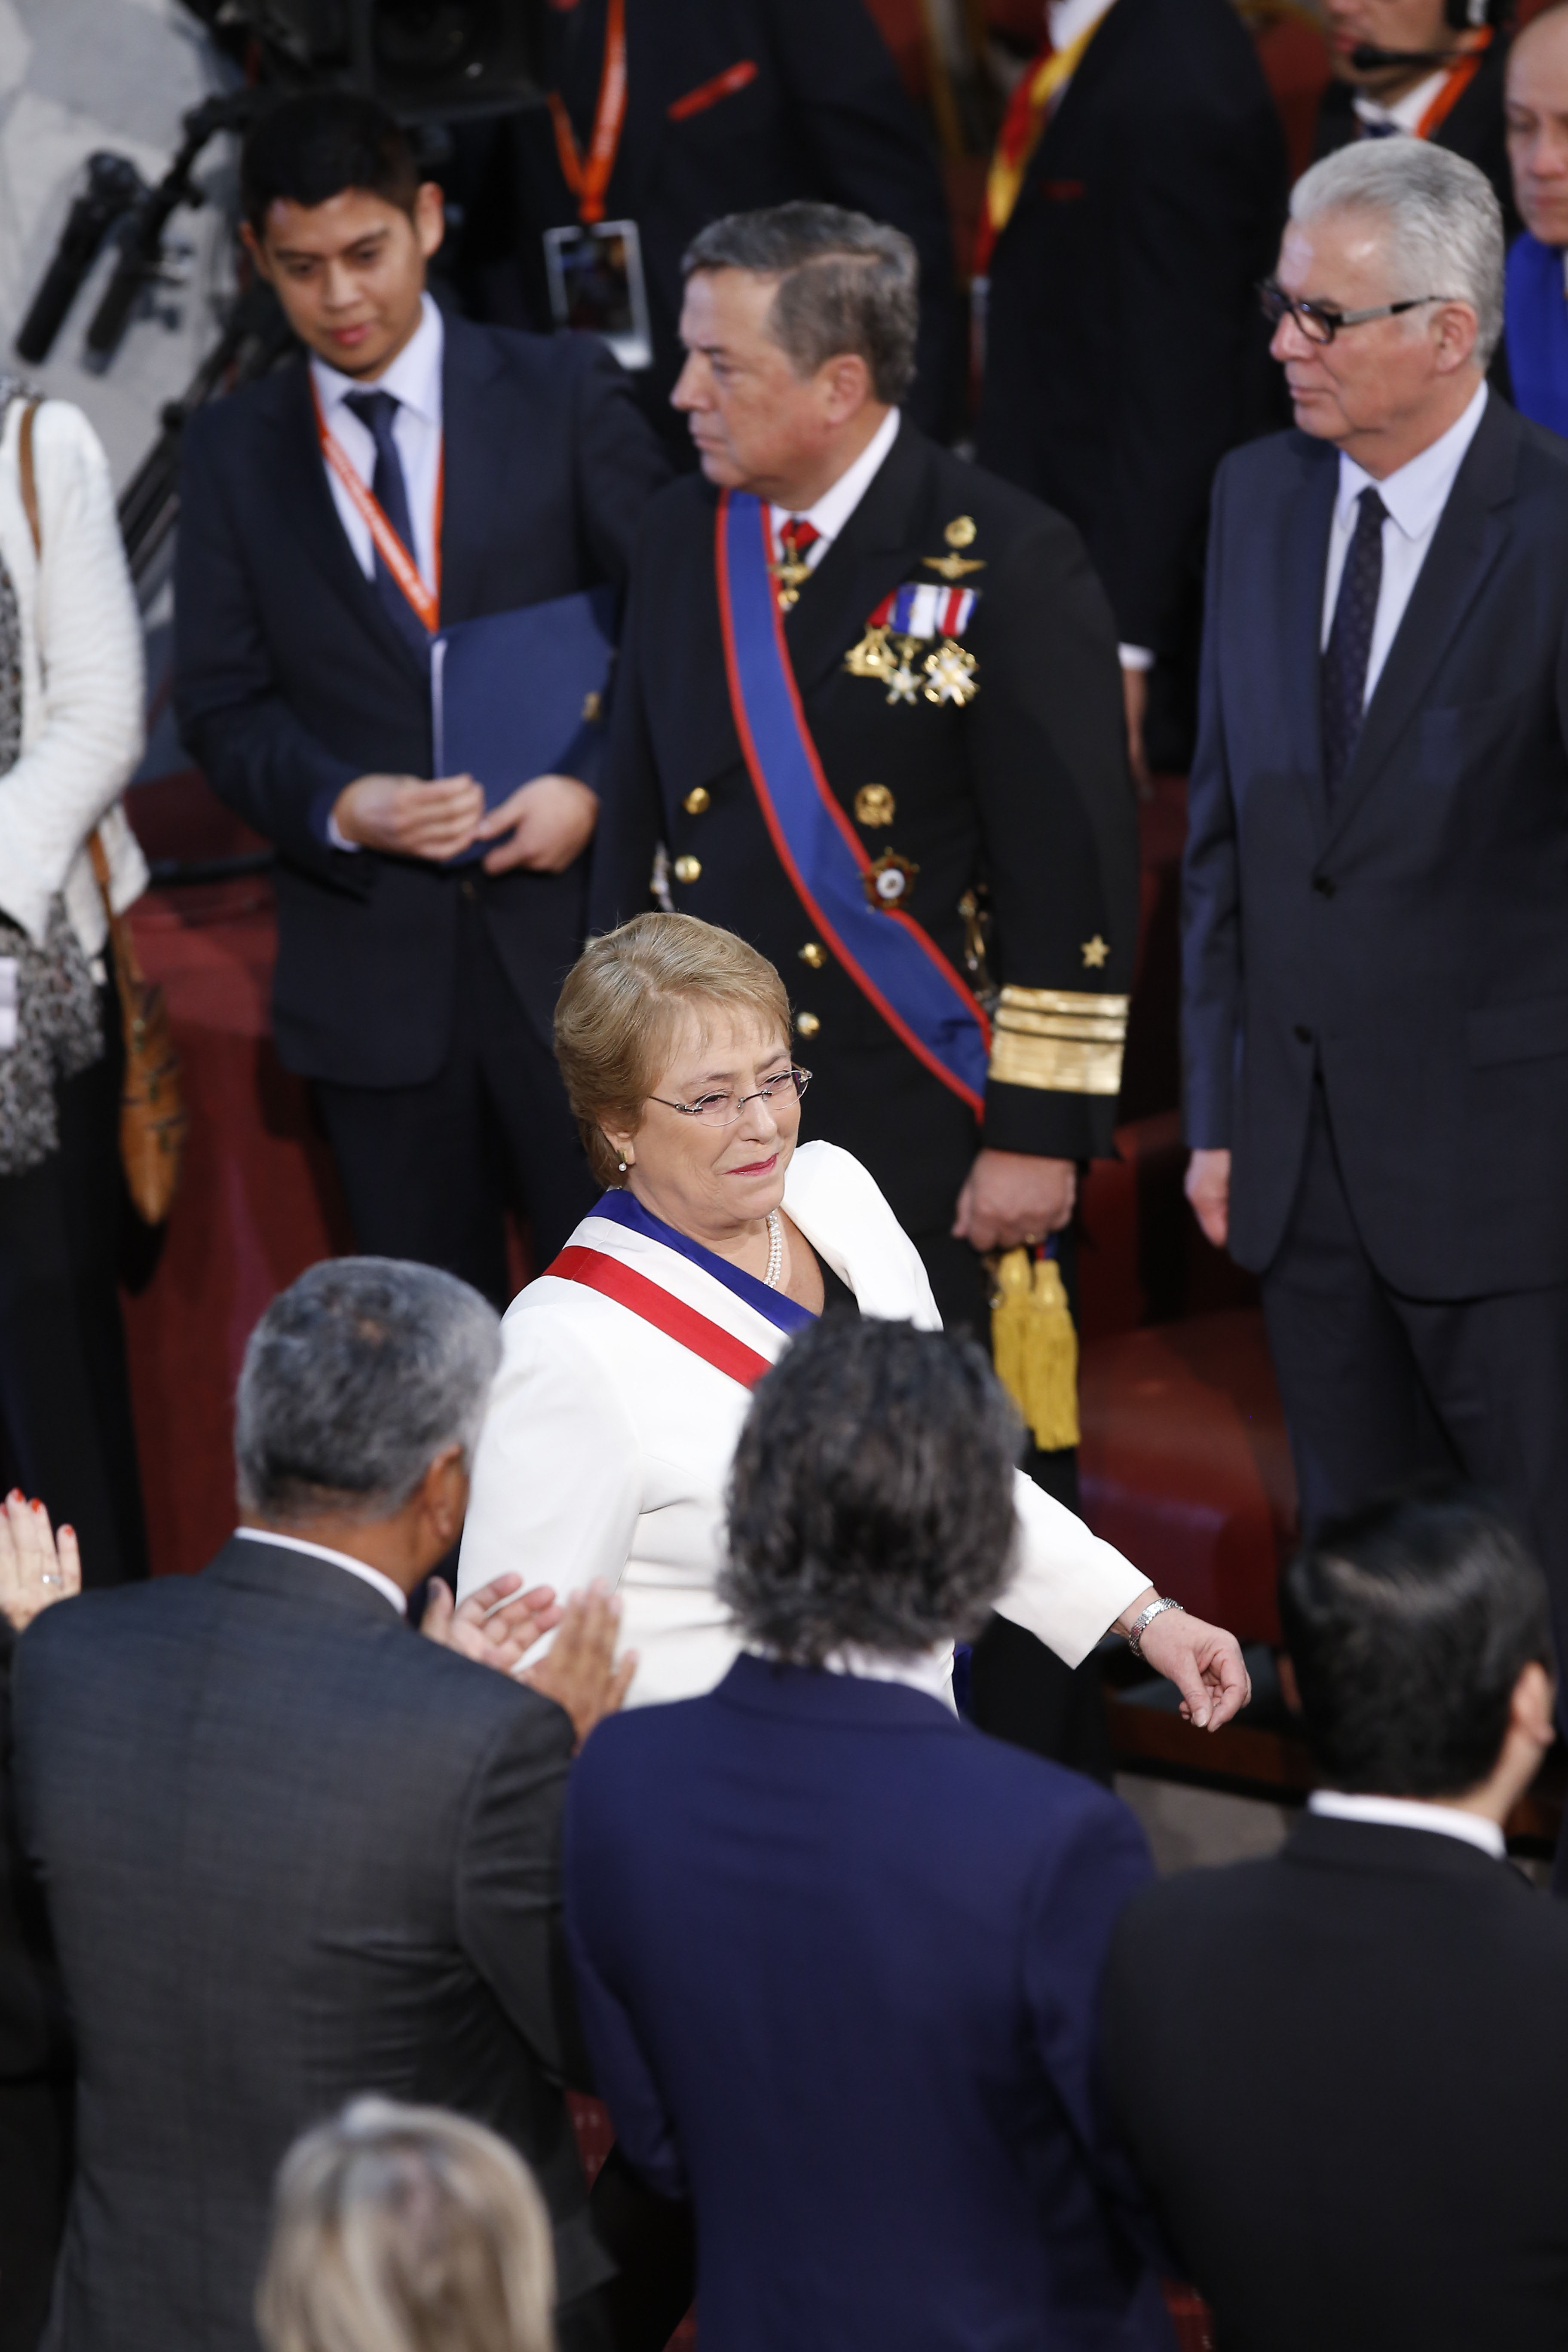 221 de Mayo de 2015/VALPARAISO La presidenta, Michelle Bachelet, ingresa al salón plenario del Congreso Nacional donde realizara su segunda Cuenta Pública al país ante la Sesión del Congreso Pleno FOTO:RAFAEL MARTINEZ/AGENCIAUNO